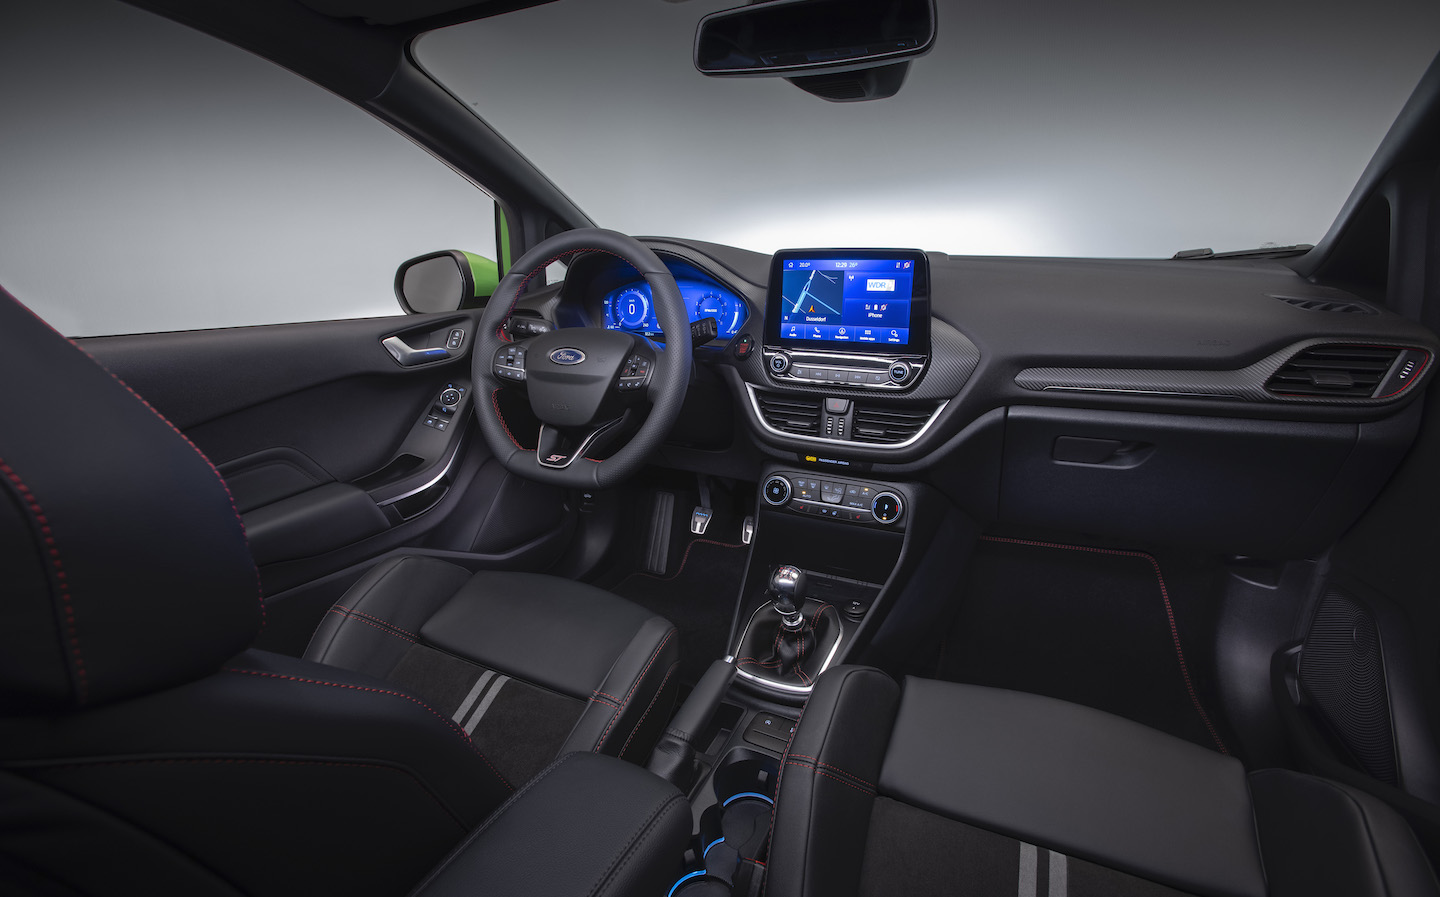 Ford reveals updated Fiesta interior